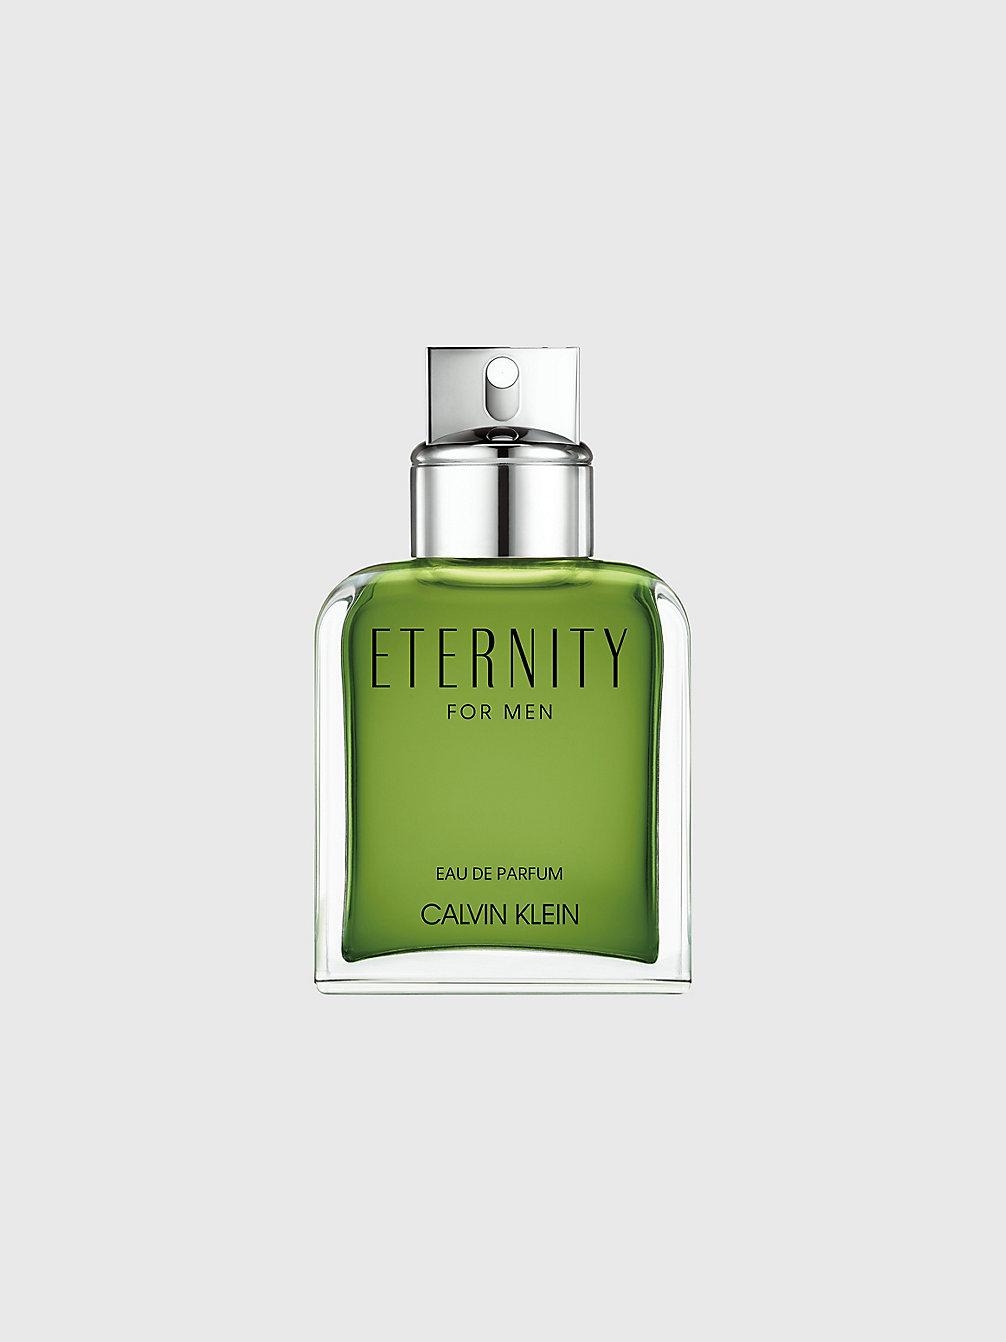 daar ben ik het mee eens trechter van mening zijn Parfums voor heren | Herengeuren | Calvin Klein®